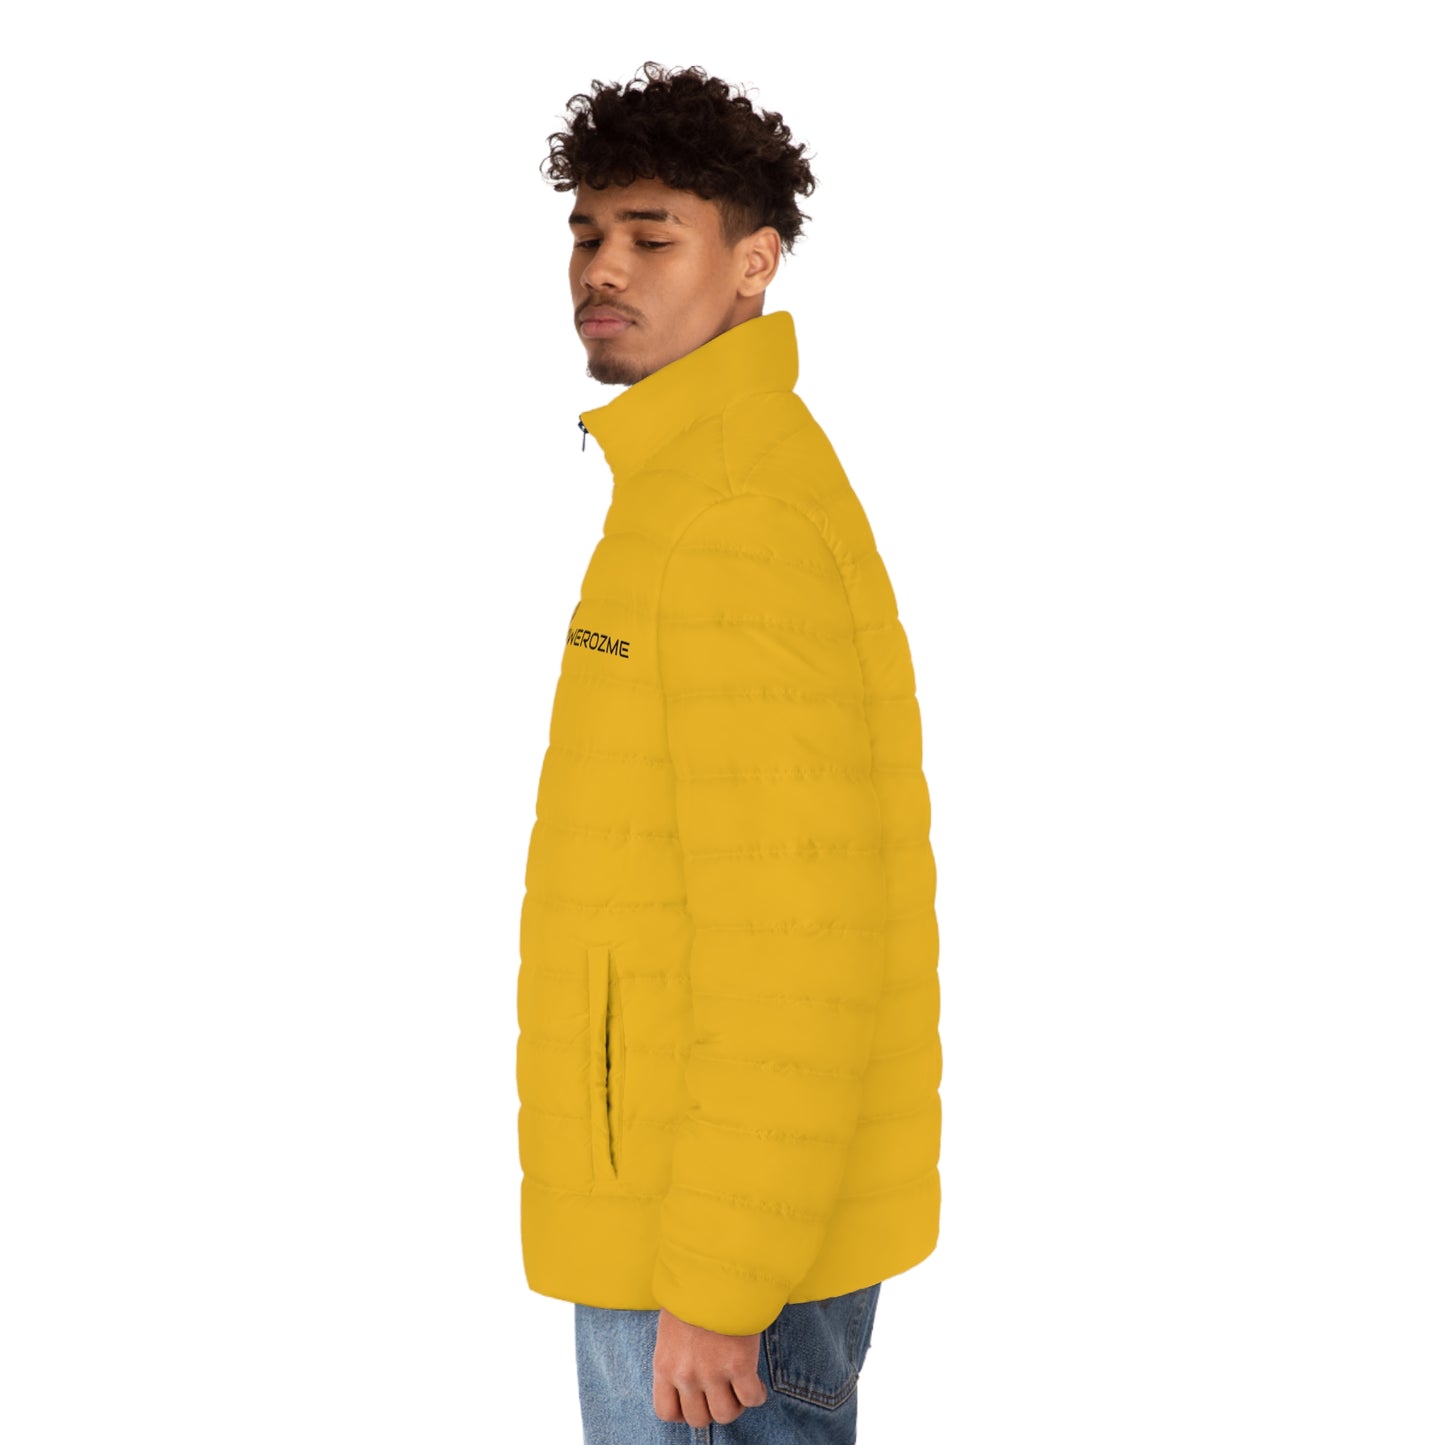 AWEROZME Yellow Jacket (AOP)